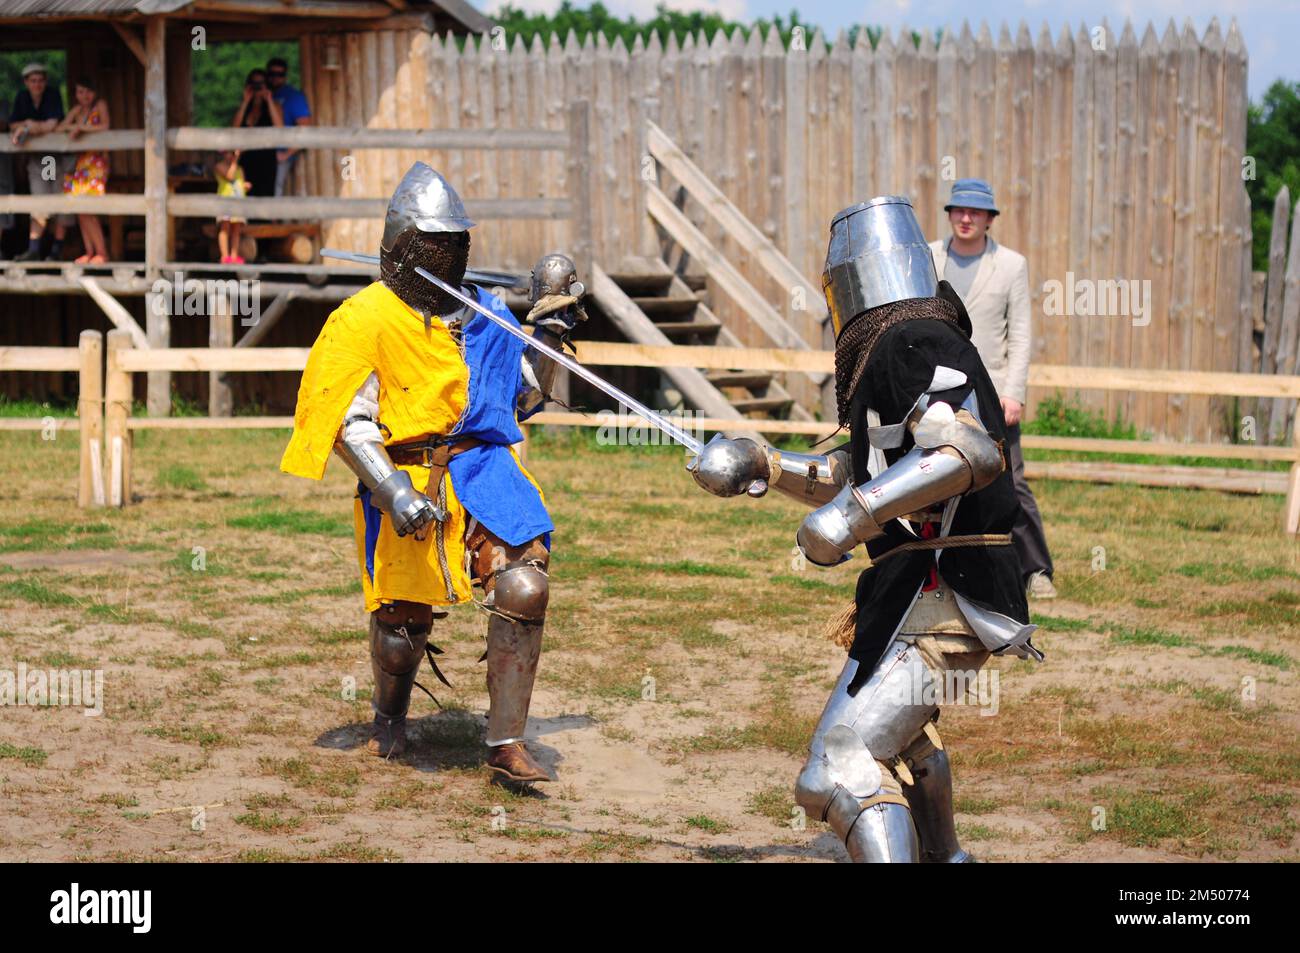 Kiew, Ukraine. 06. Juli 2013. Traditionelles Duell auf den Schwertern zweier Ritter in Rüstung, eine festliche Show am Tag der Sommersonnenwende. Stockfoto